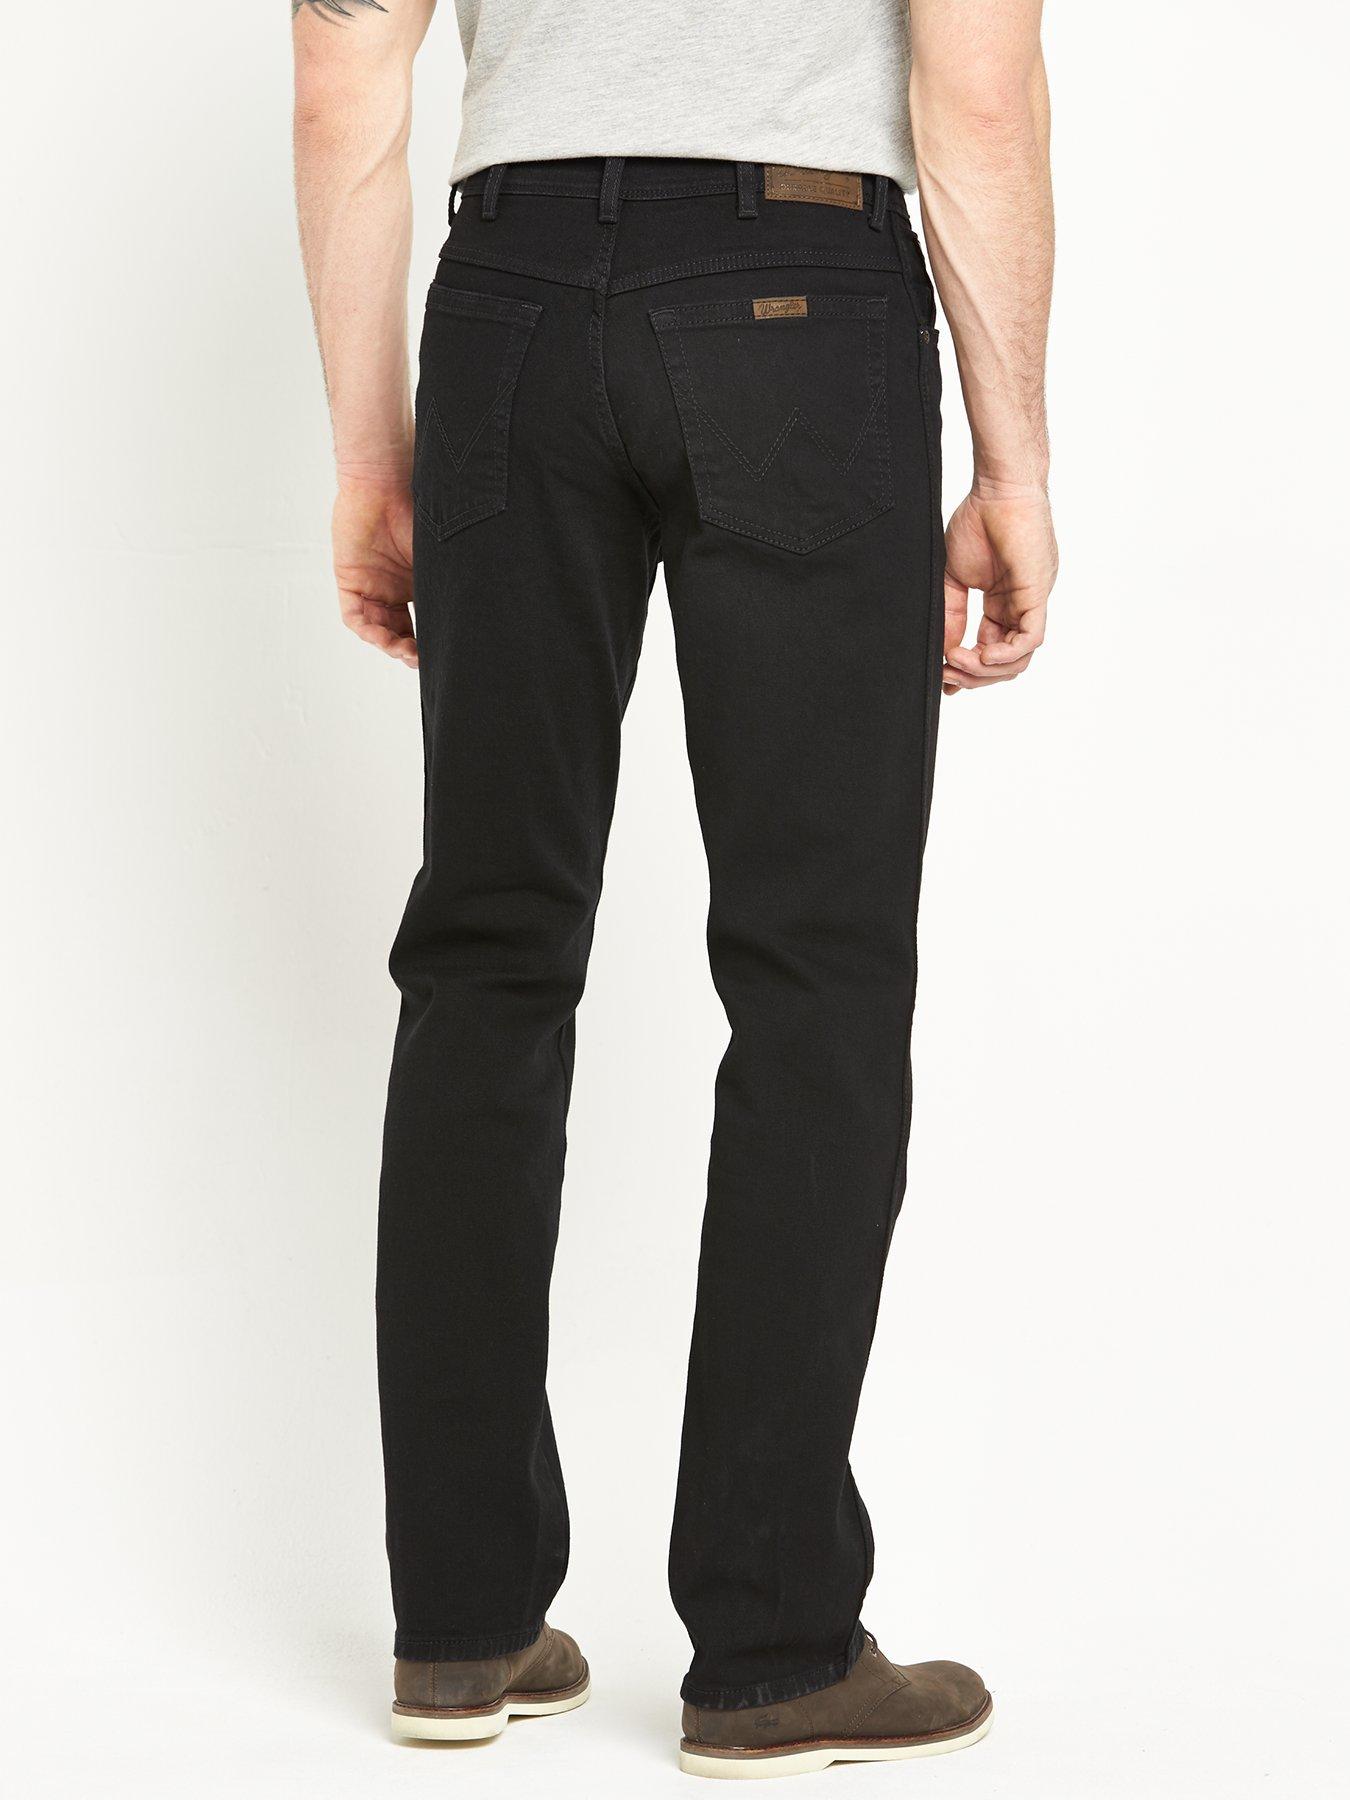 wrangler durable jeans